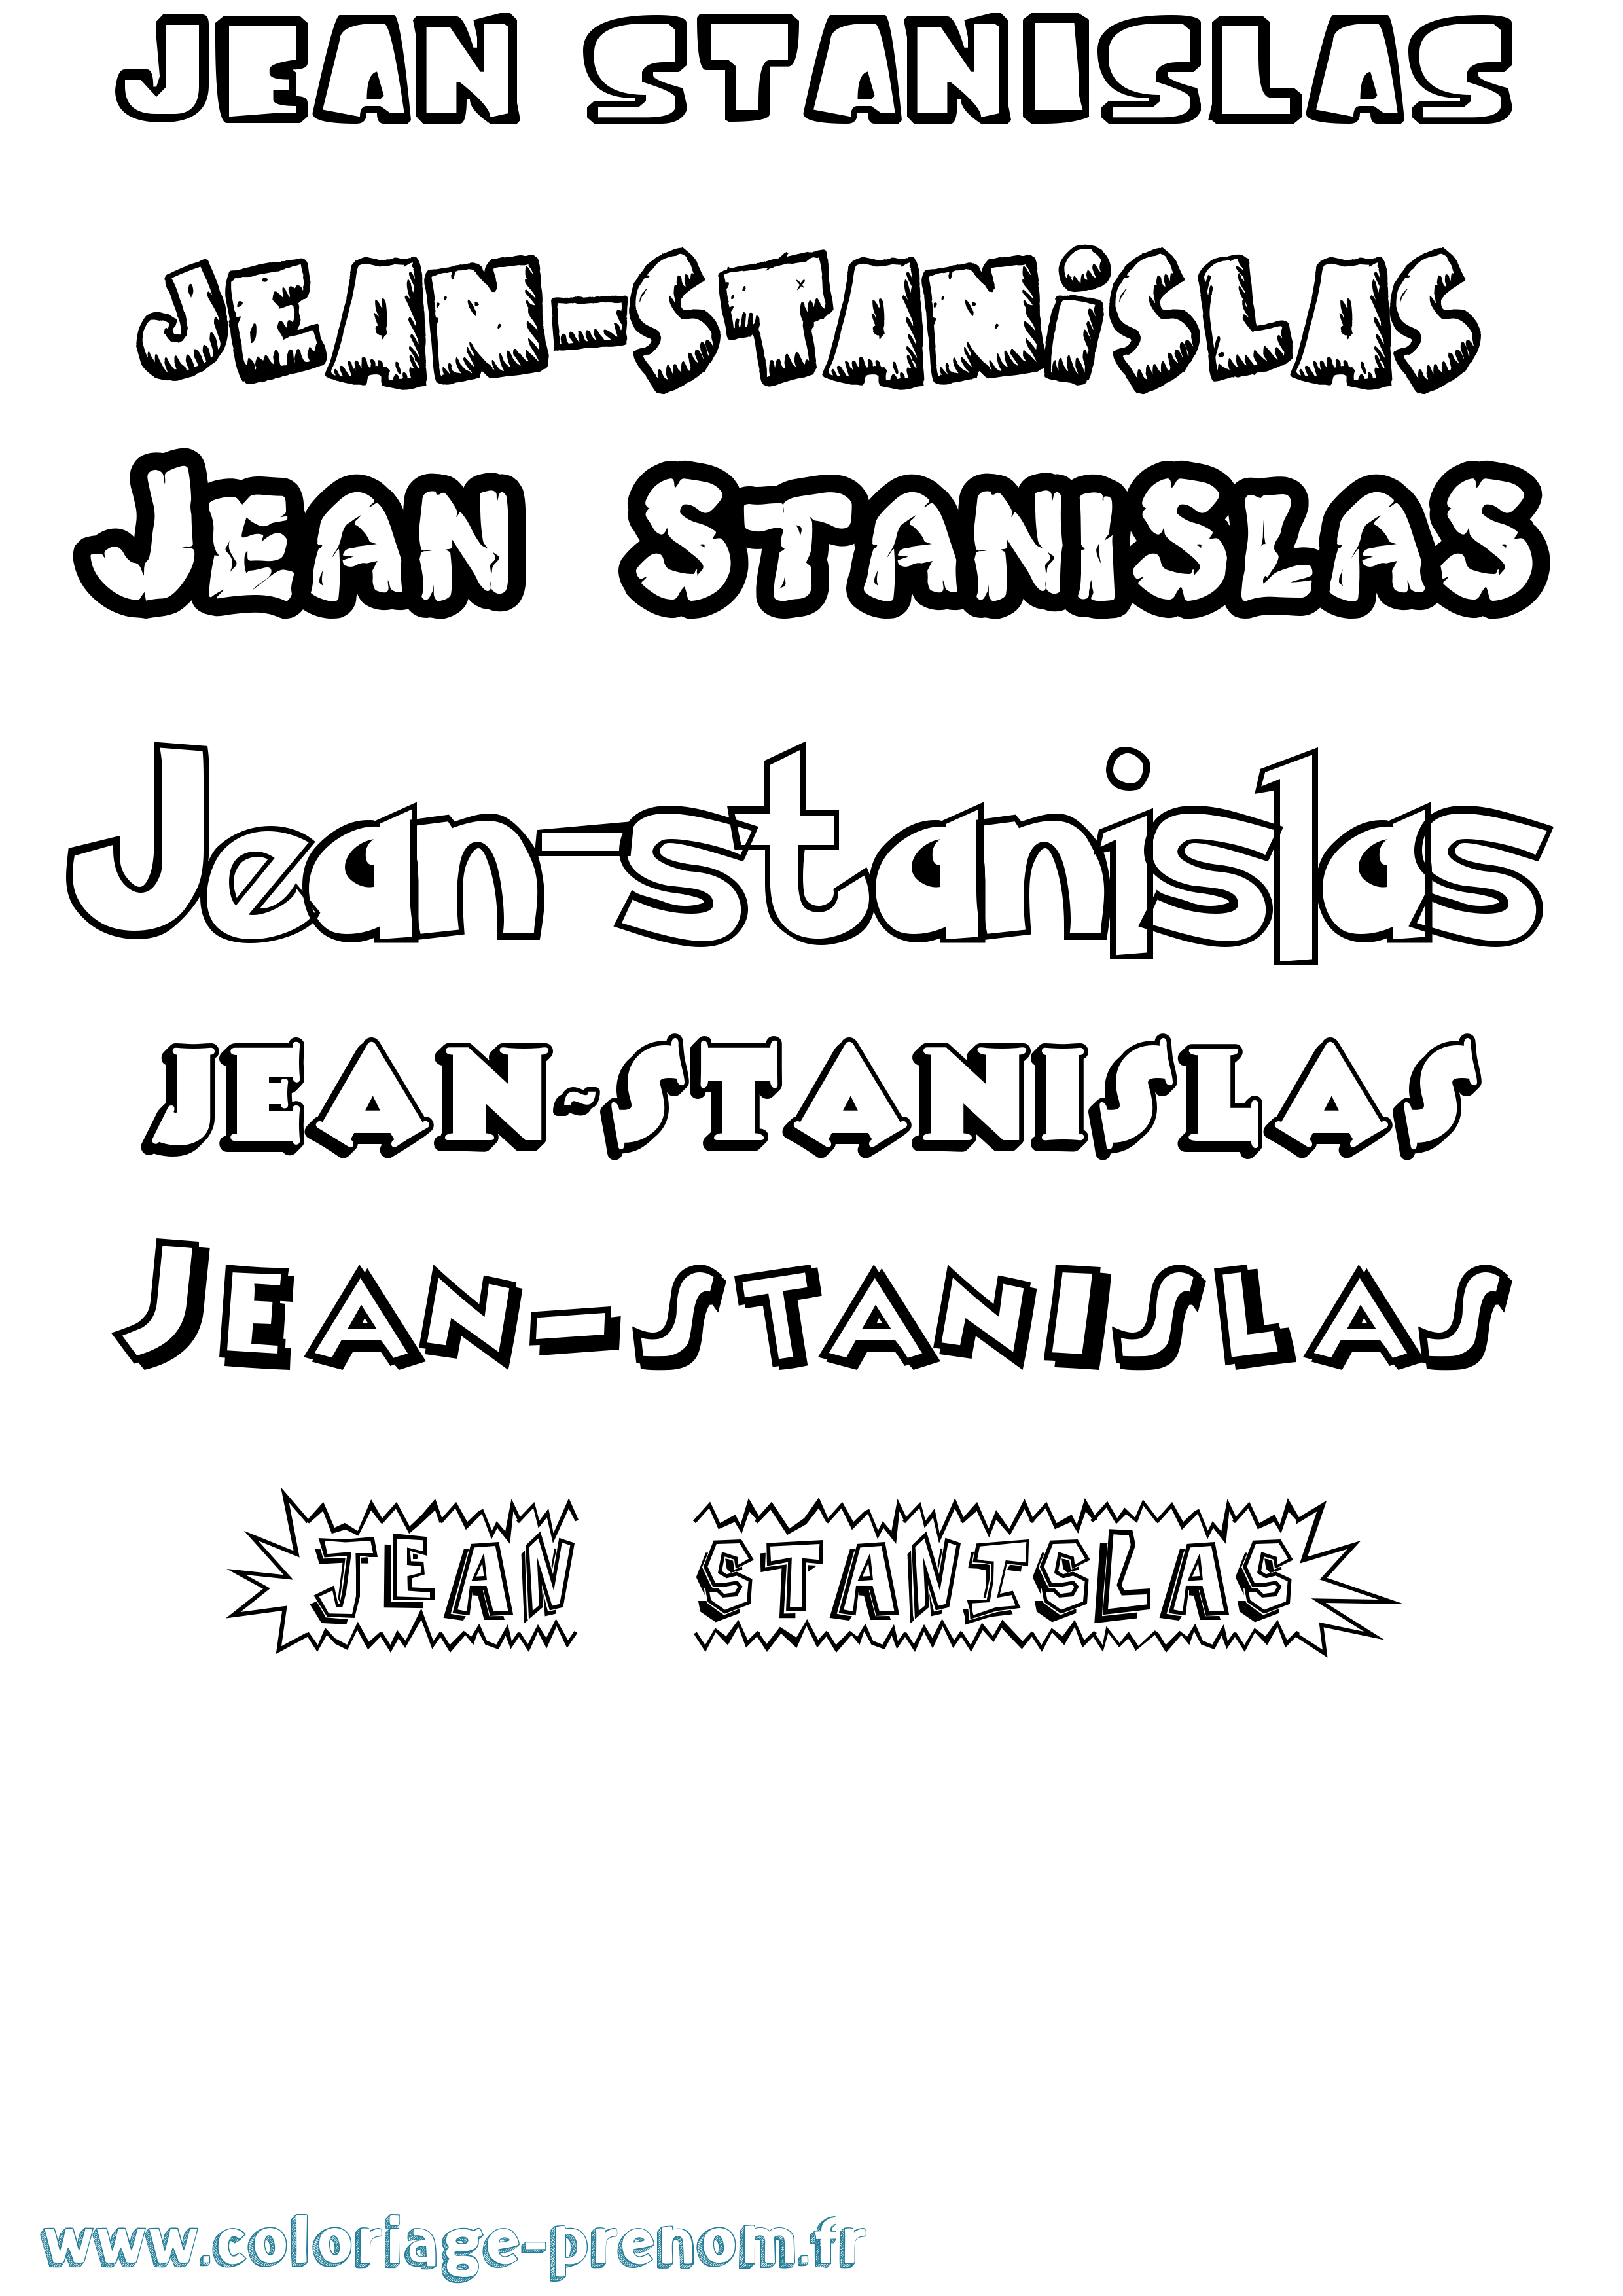 Coloriage prénom Jean-Stanislas Dessin Animé